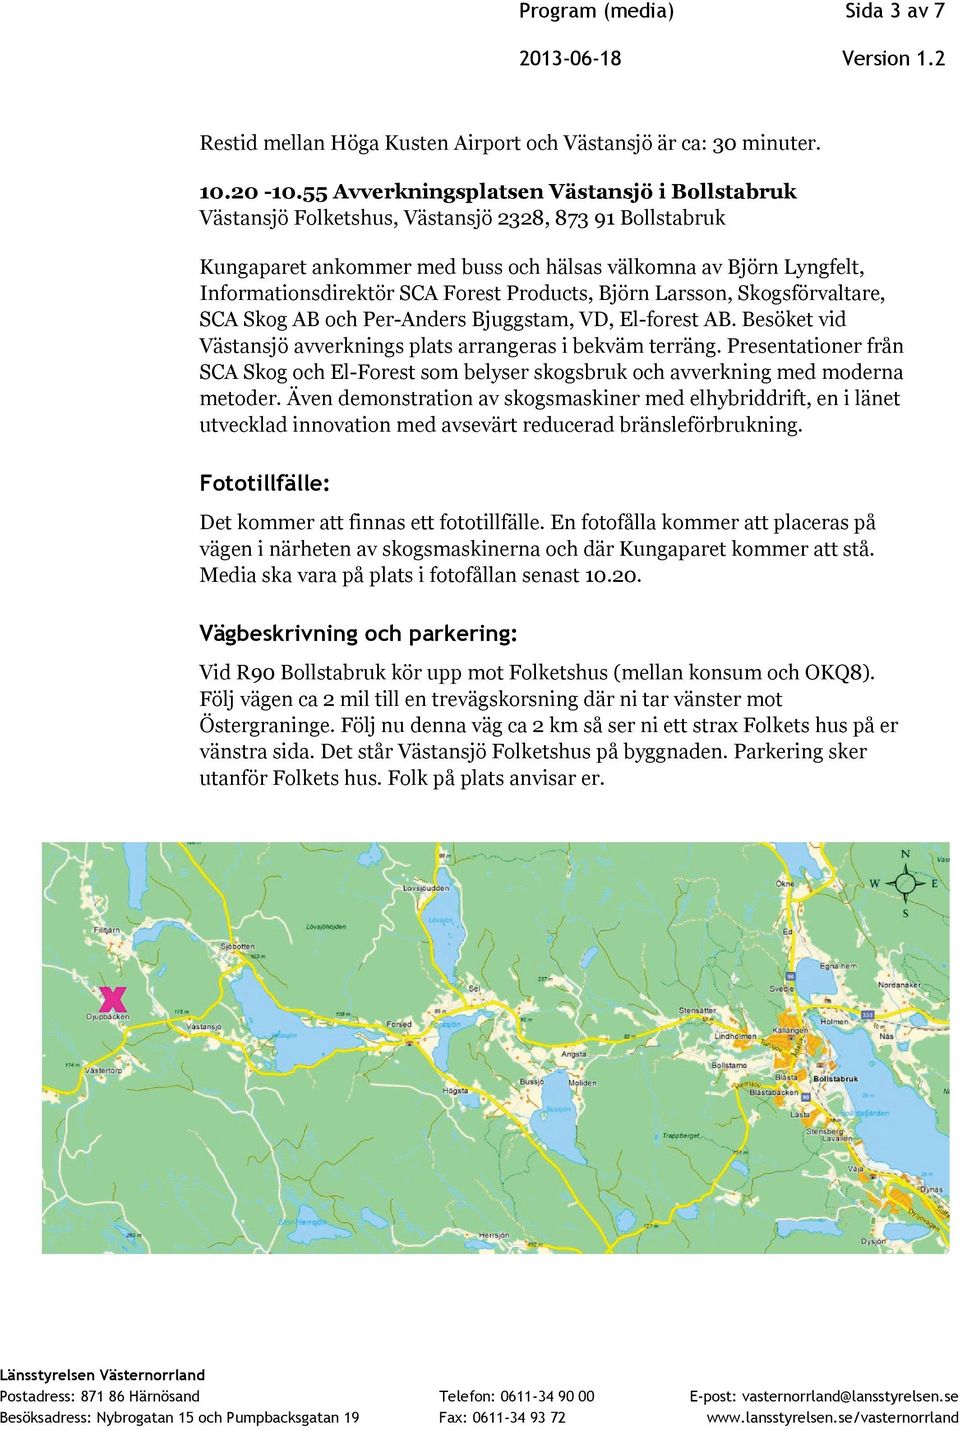 Forest Products, Björn Larsson, Skogsförvaltare, SCA Skog AB och Per-Anders Bjuggstam, VD, El-forest AB. Besöket vid Västansjö avverknings plats arrangeras i bekväm terräng.